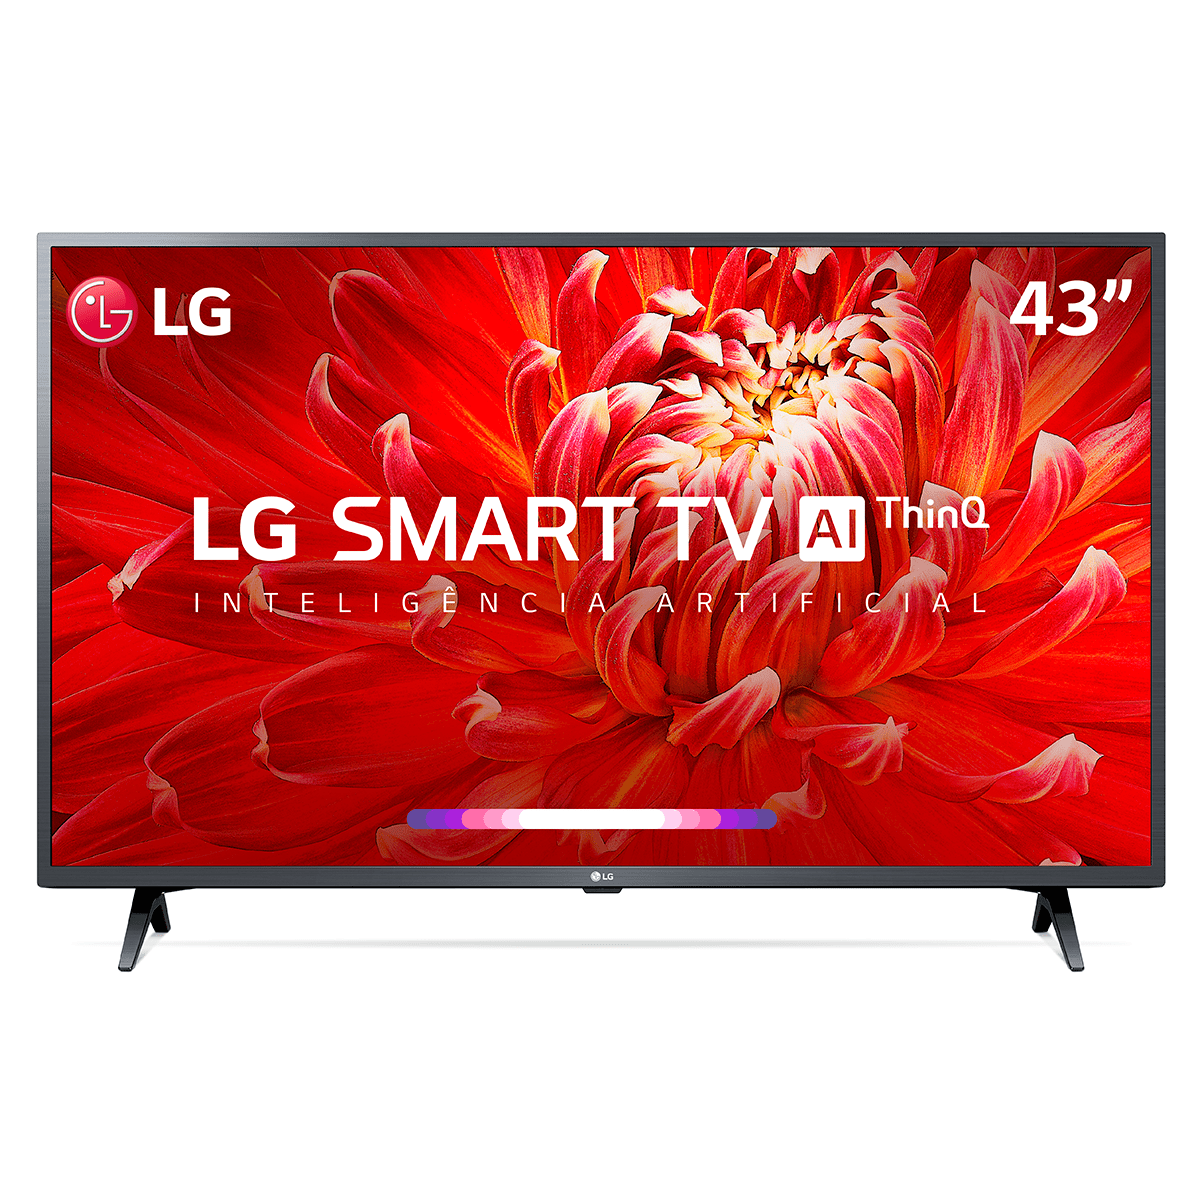 SmartTV LG 43" Full HD 43LM6370 WiFi Bluetooth HDR ThinQAI Dark Iron Gray Bivolt